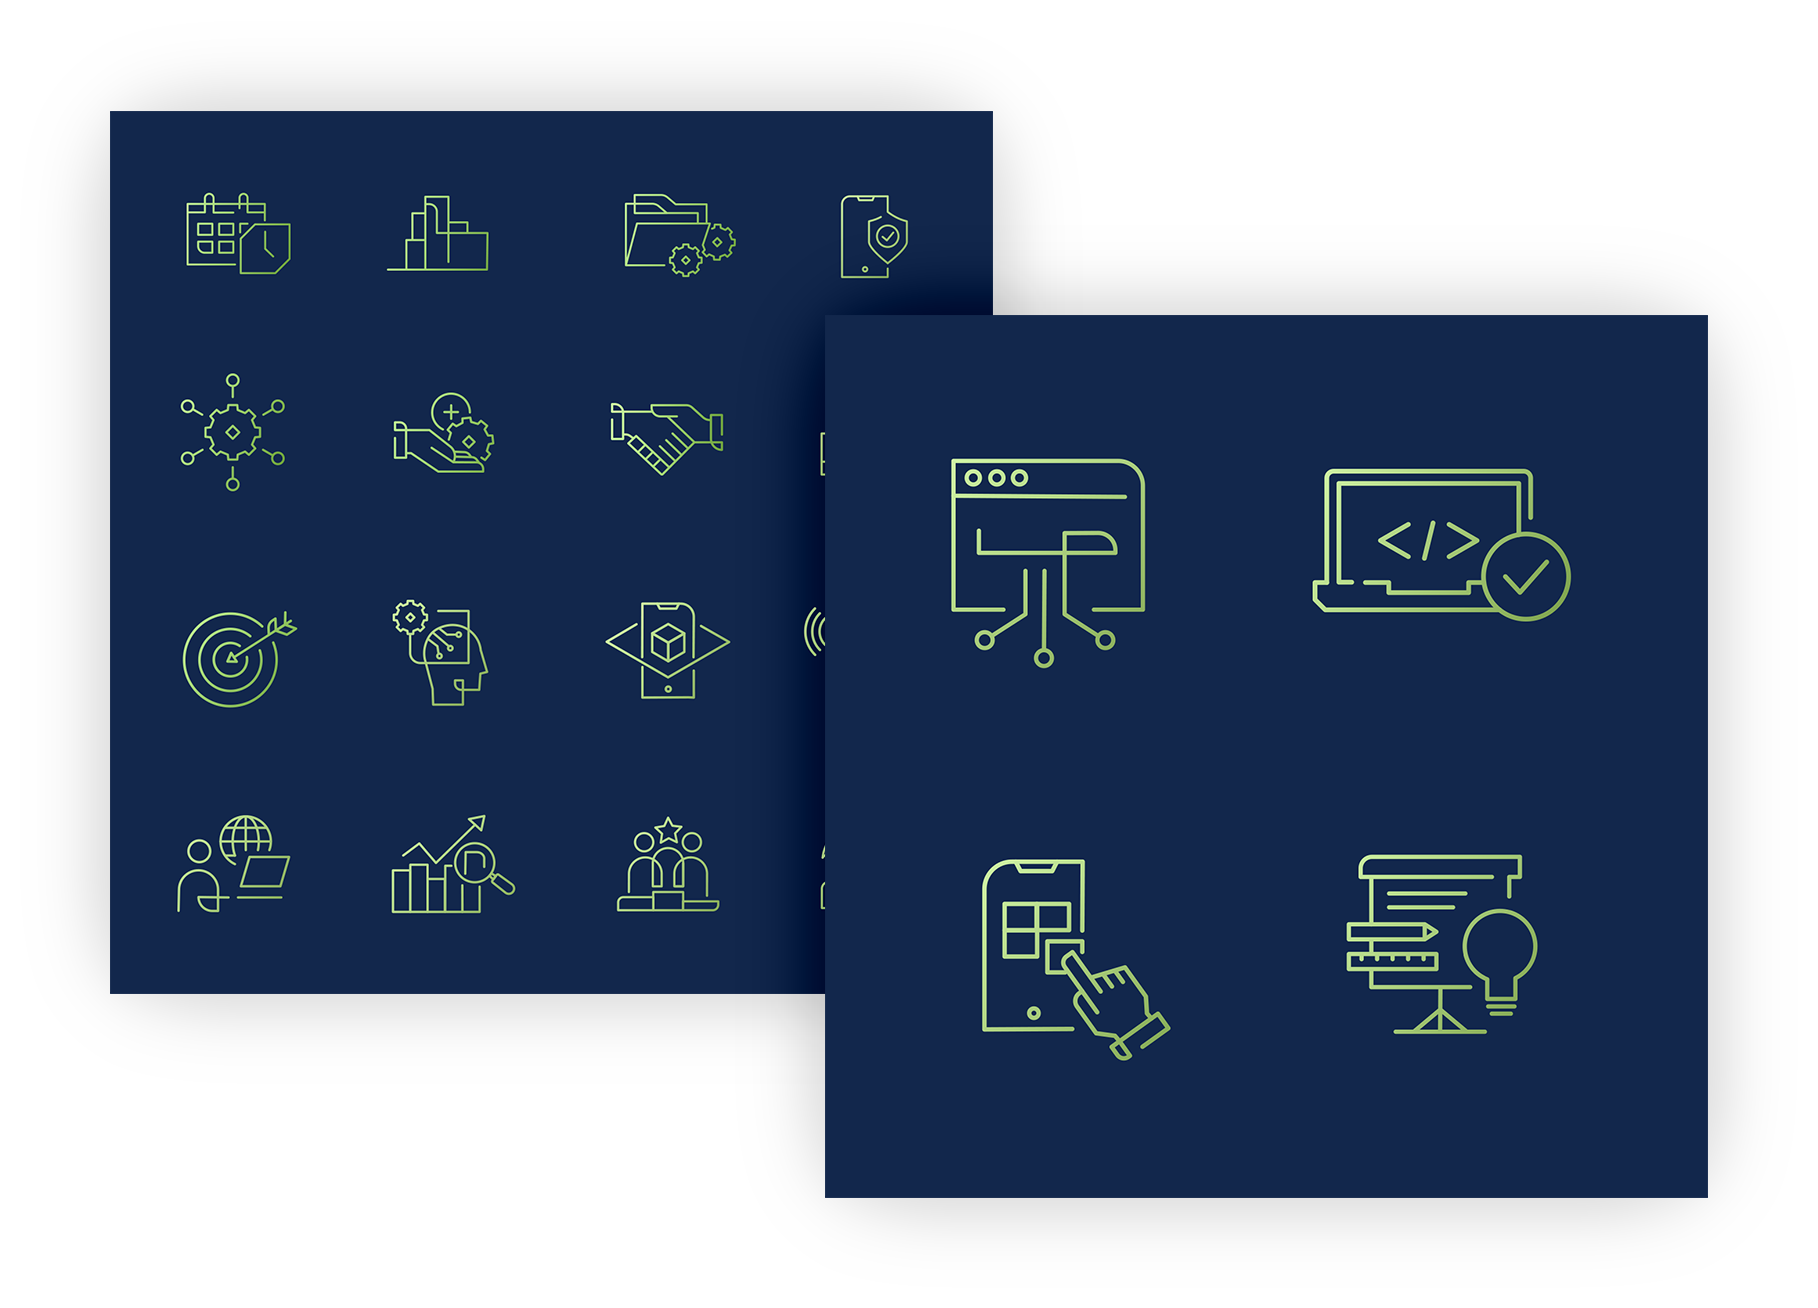 Darstellung der Icons für die ServiceFactum-Website